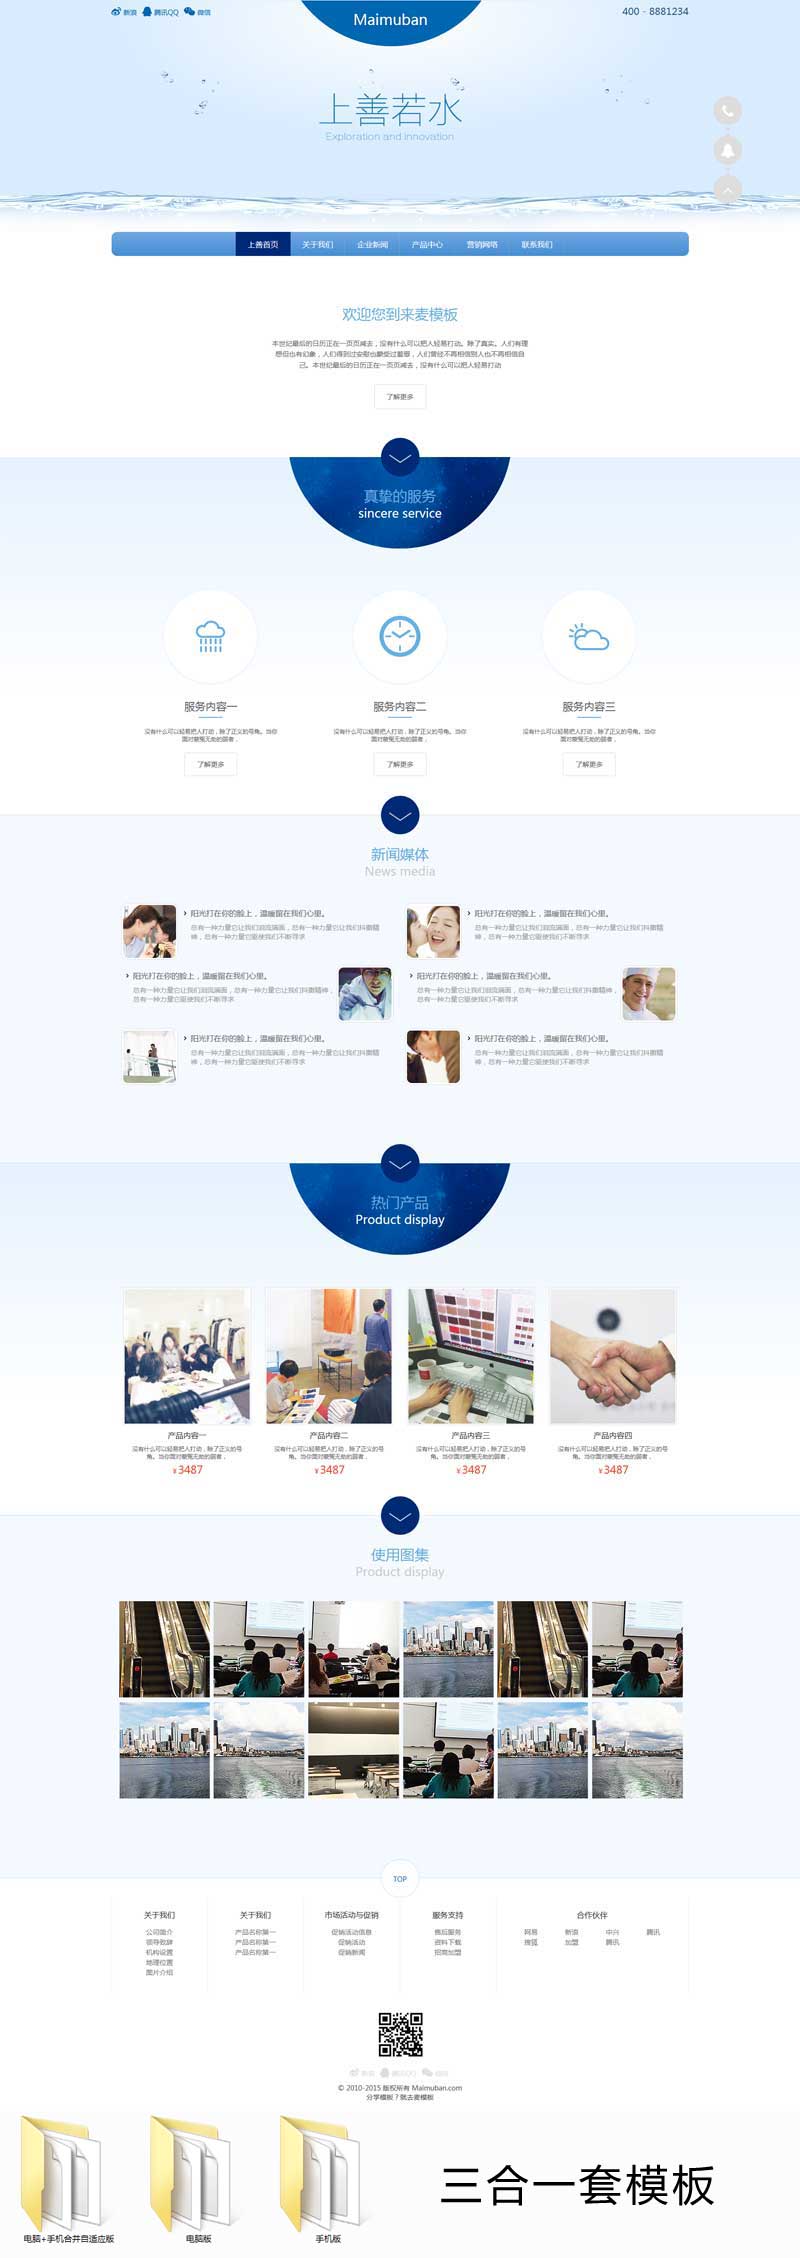 蓝色的化妆品企业三合一网站模板